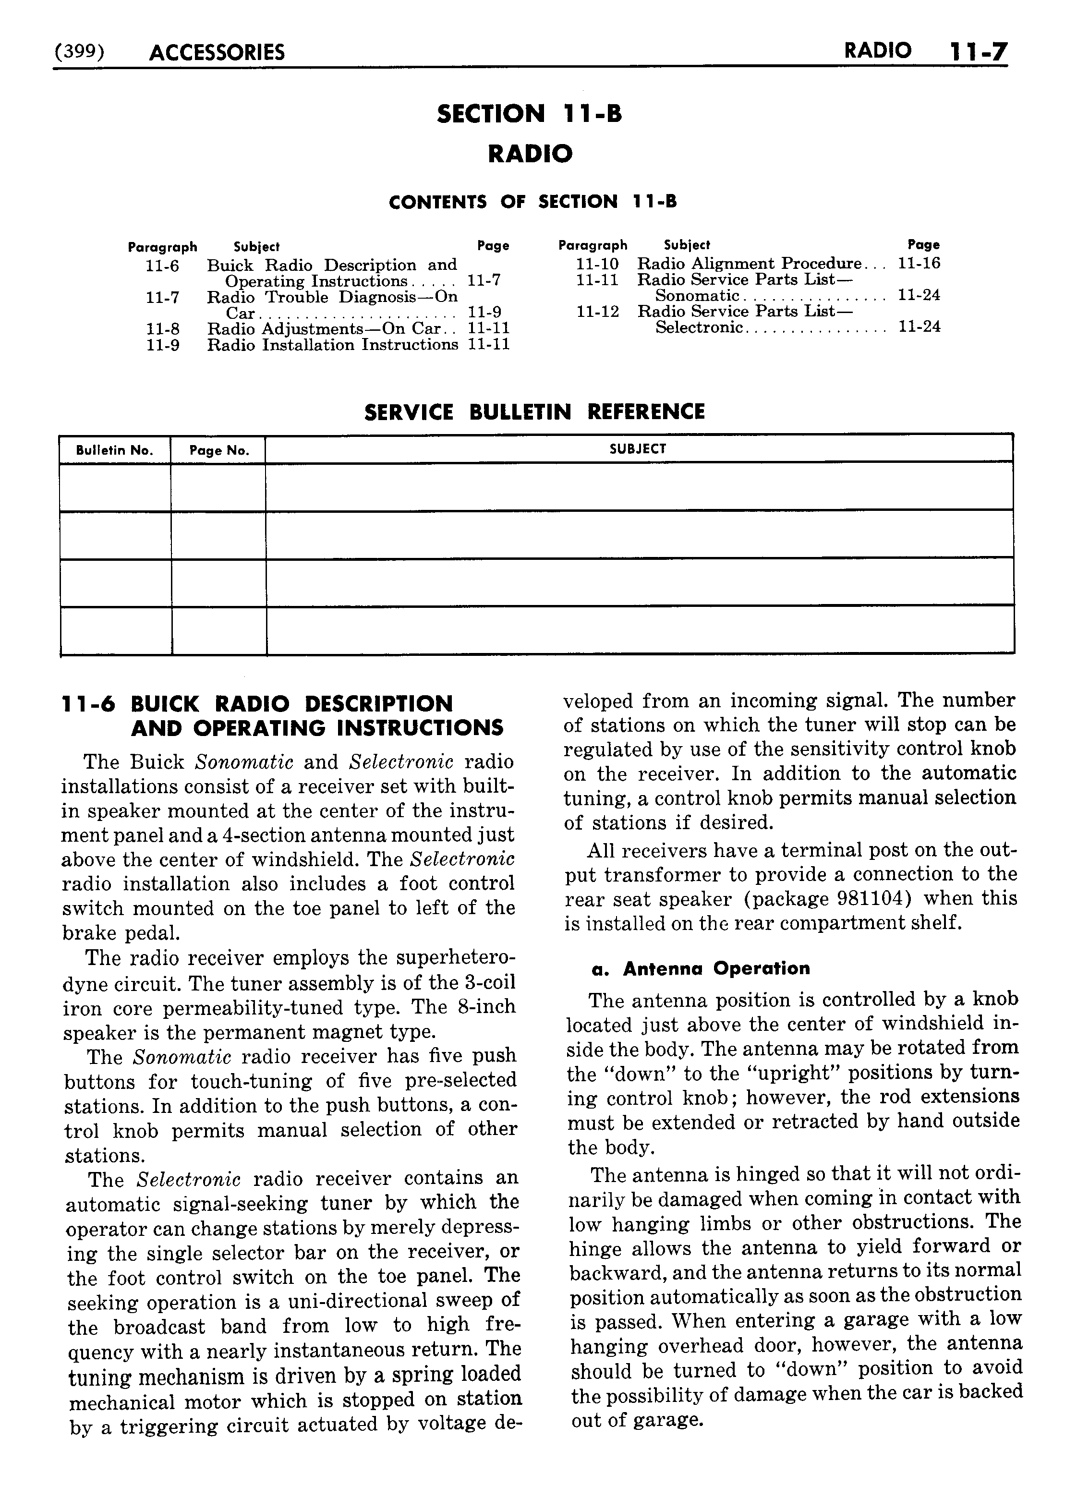 n_12 1951 Buick Shop Manual - Accessories-007-007.jpg